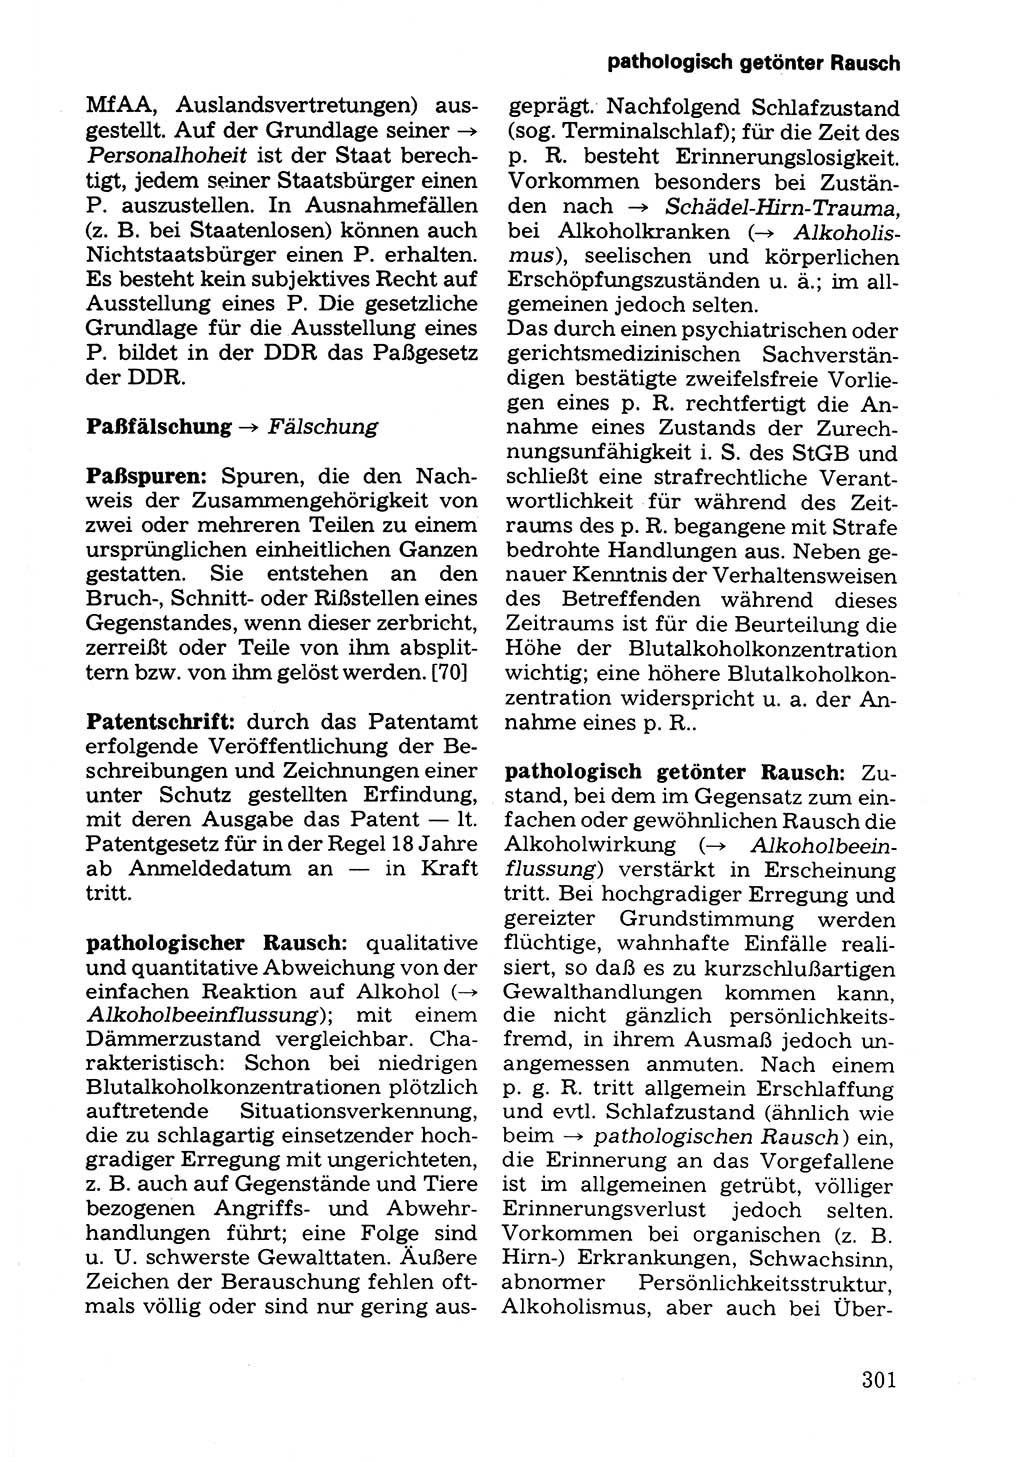 Wörterbuch der sozialistischen Kriminalistik [Deutsche Demokratische Republik (DDR)] 1981, Seite 301 (Wb. soz. Krim. DDR 1981, S. 301)